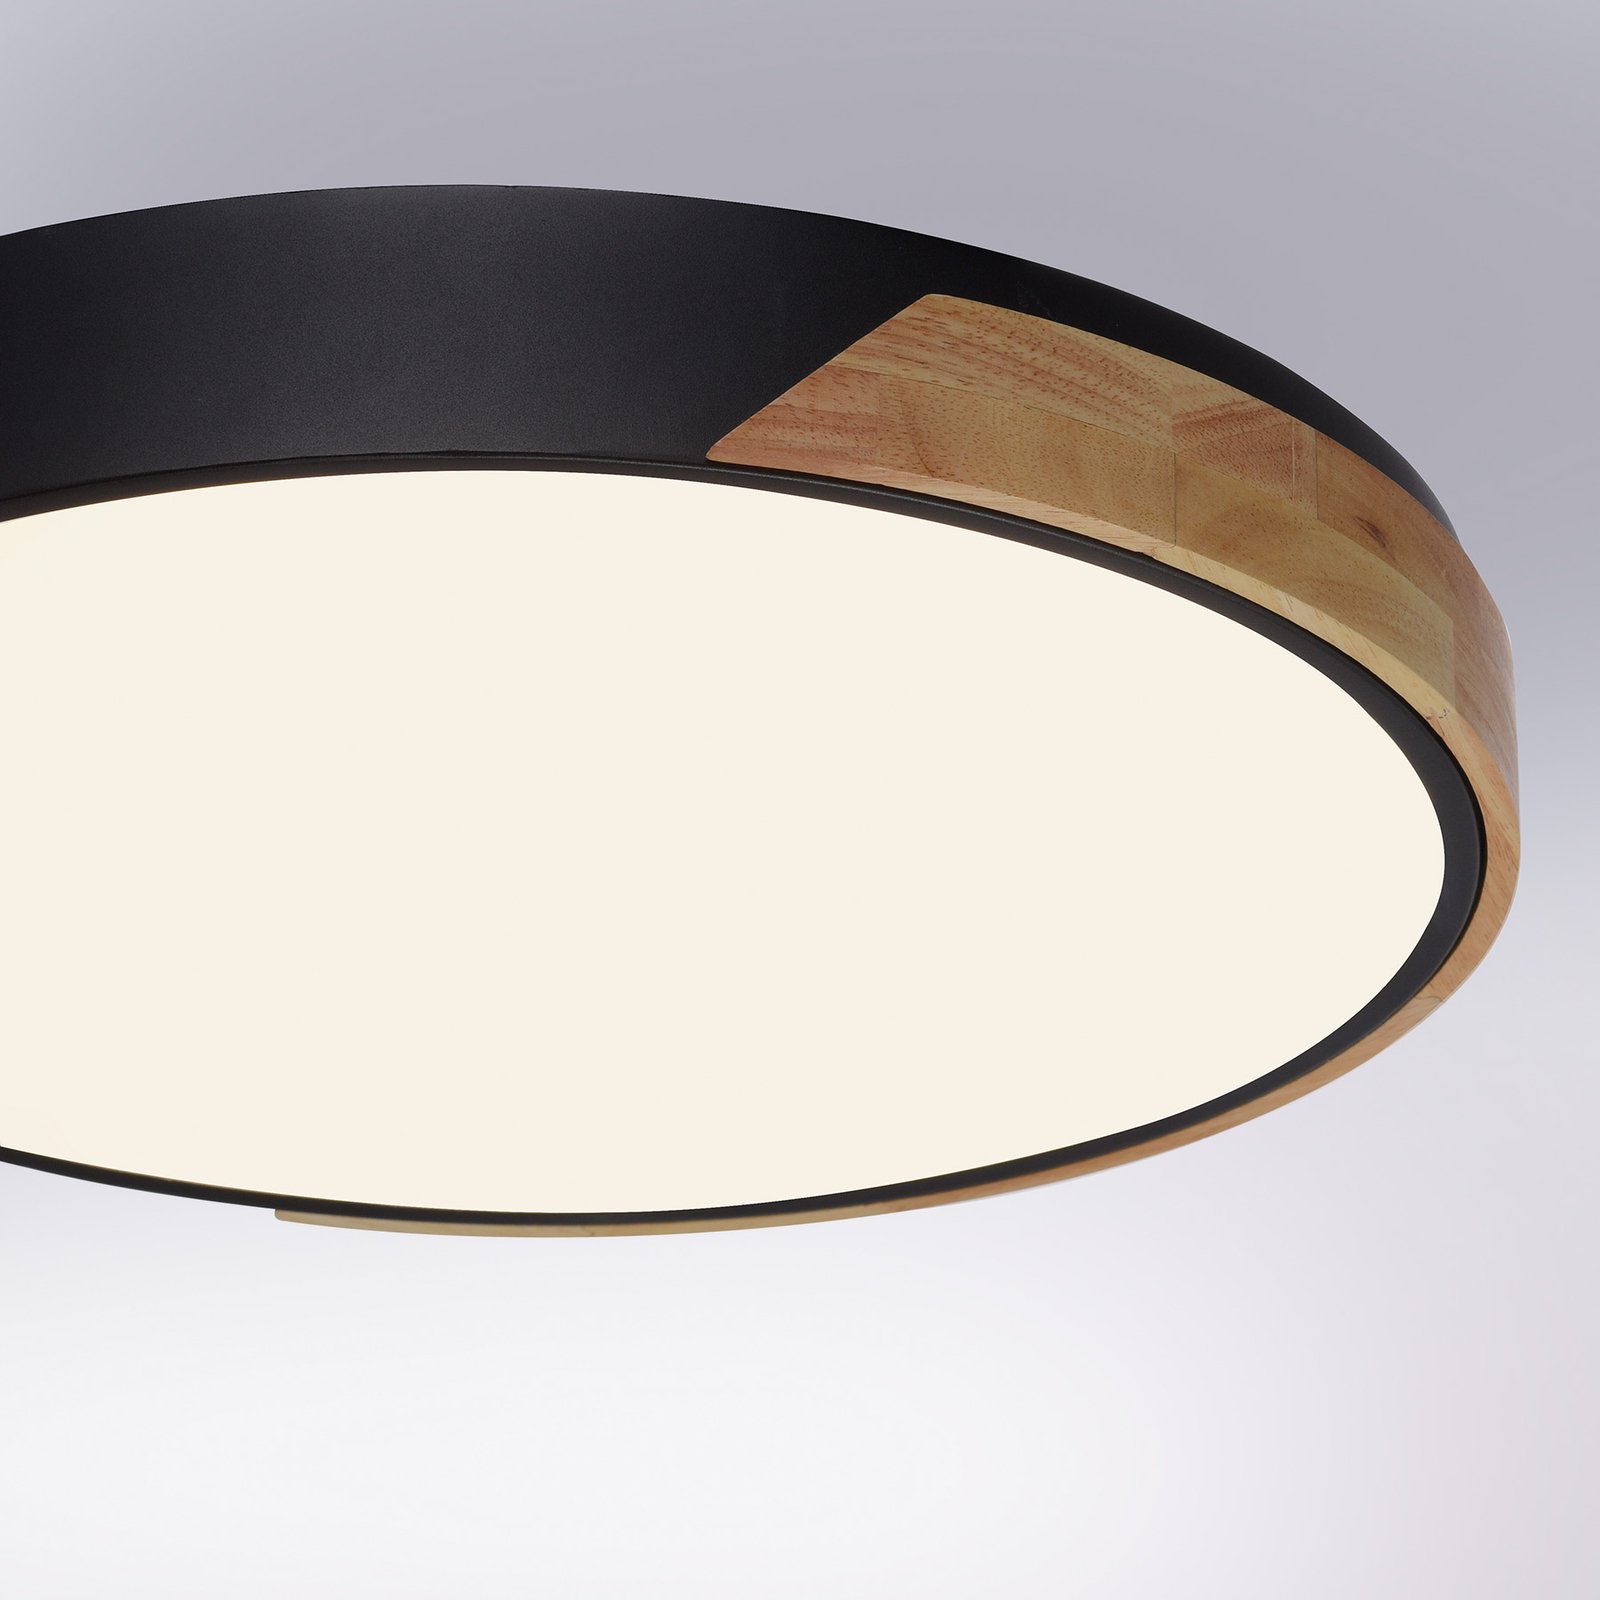 Paul Neuhaus Q-BILA LED-Deckenlampe, schwarz/eiche